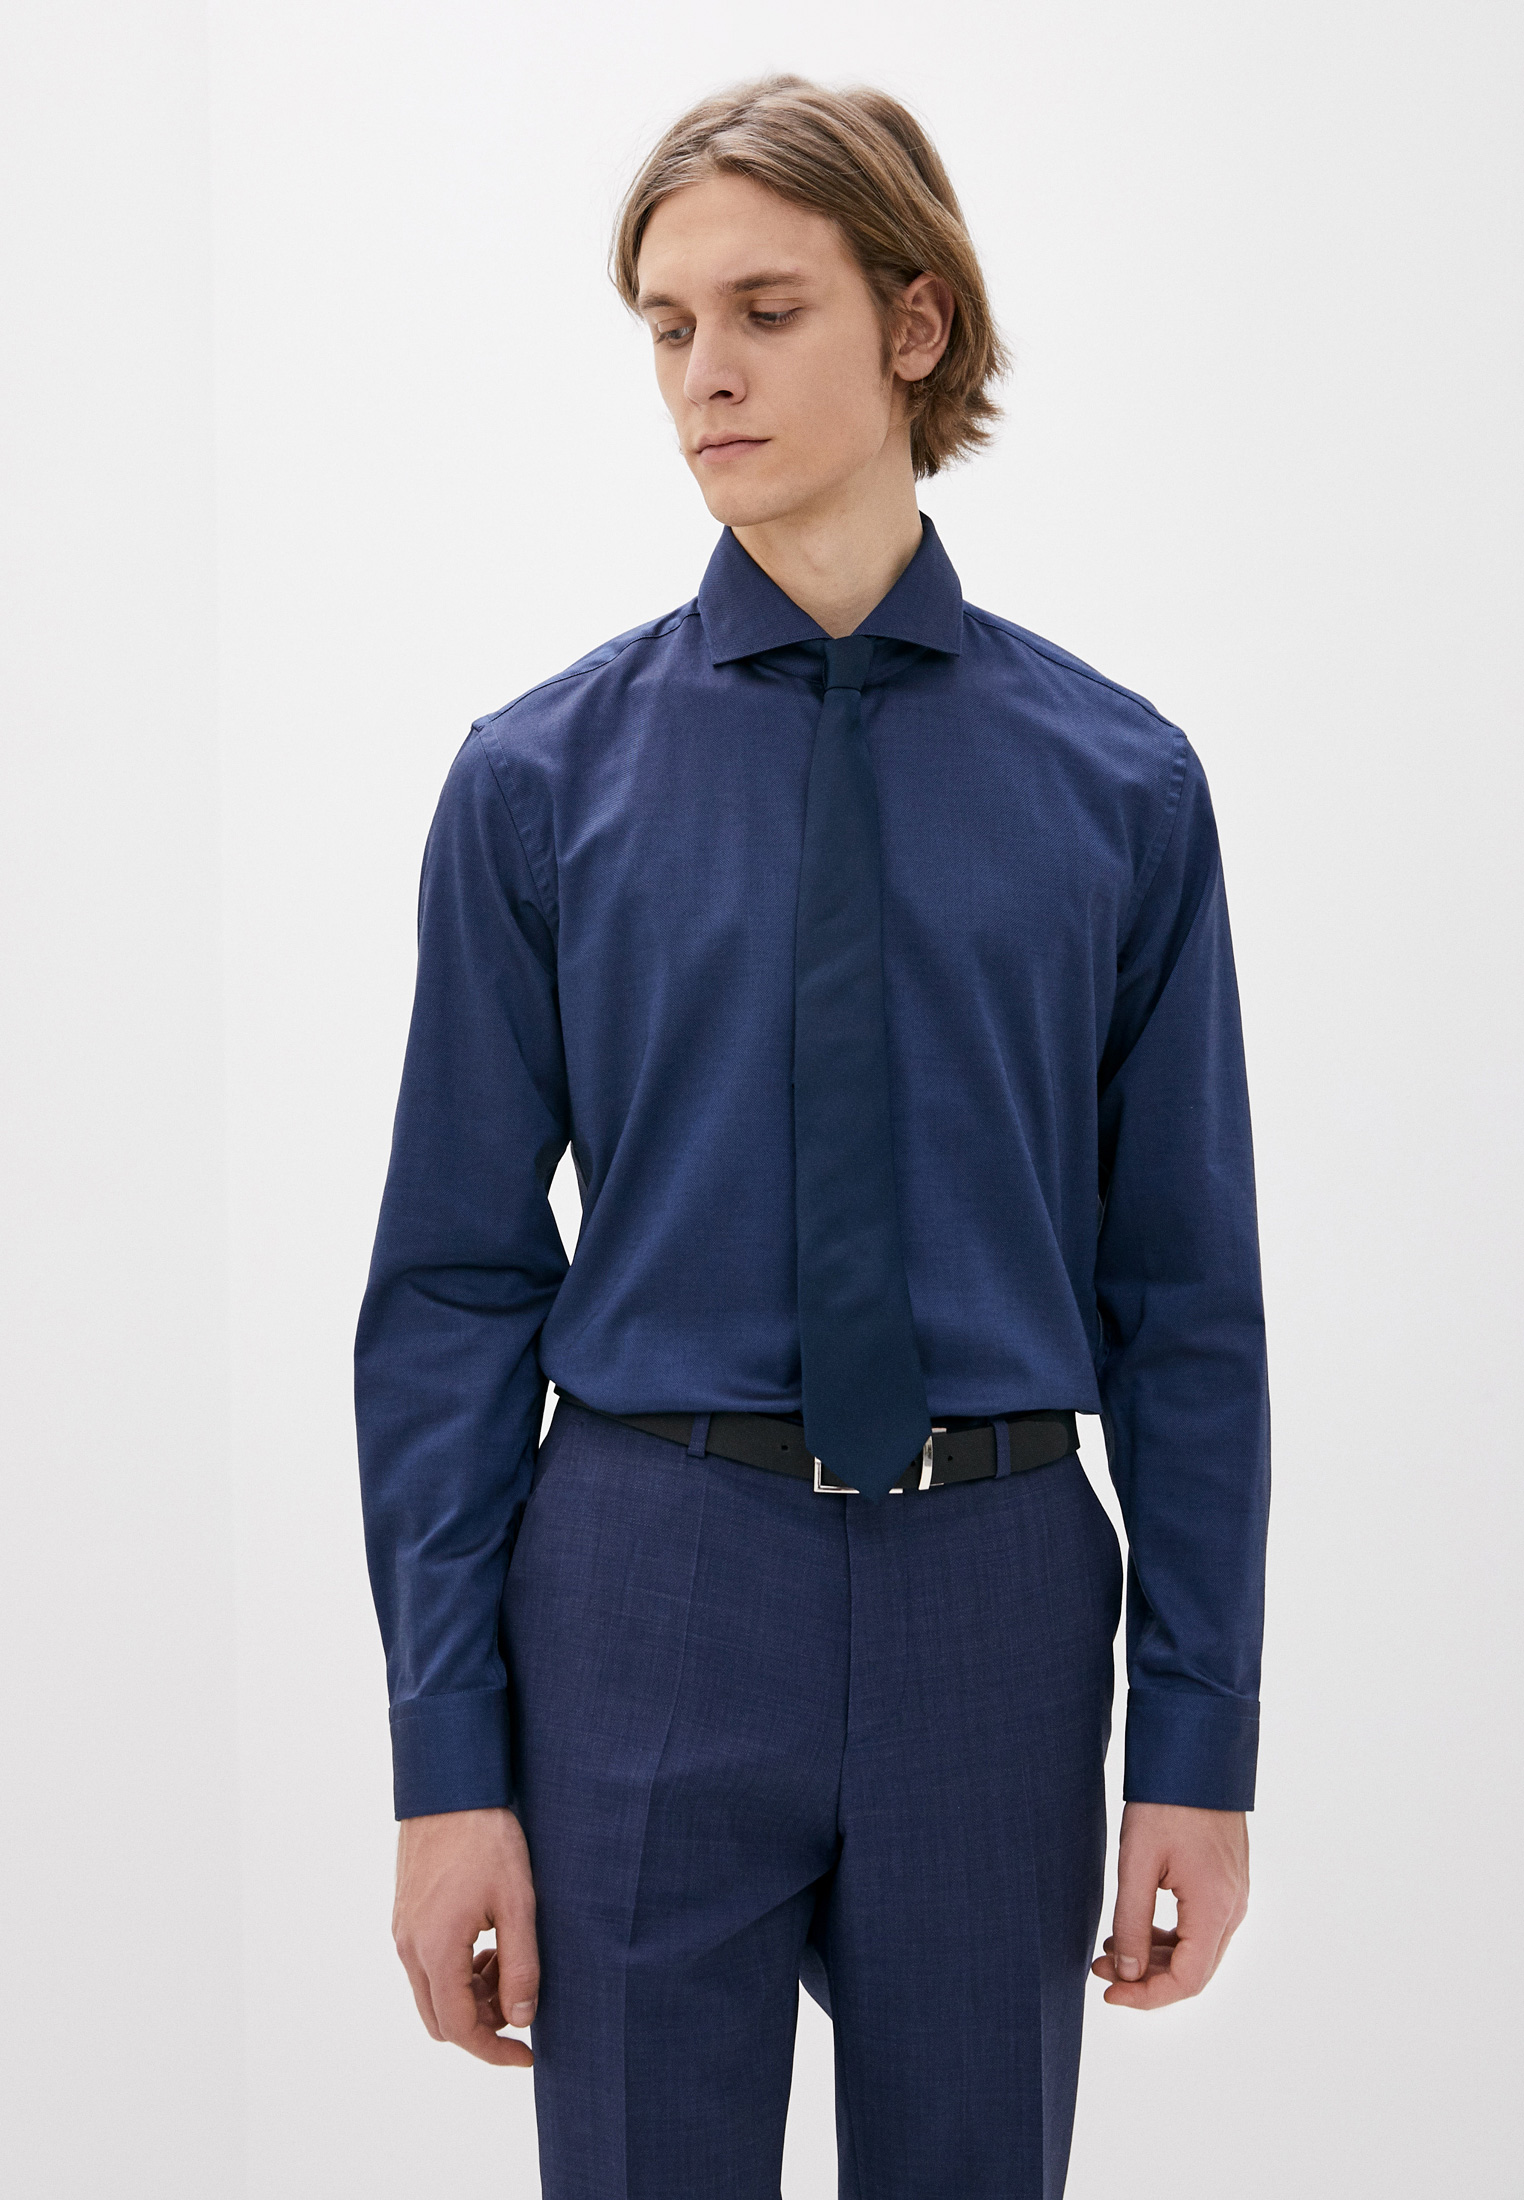 Рубашка Hugo Kason, цвет: синий, MP002XM1RN1O — купить в интернет-магазине Lamoda